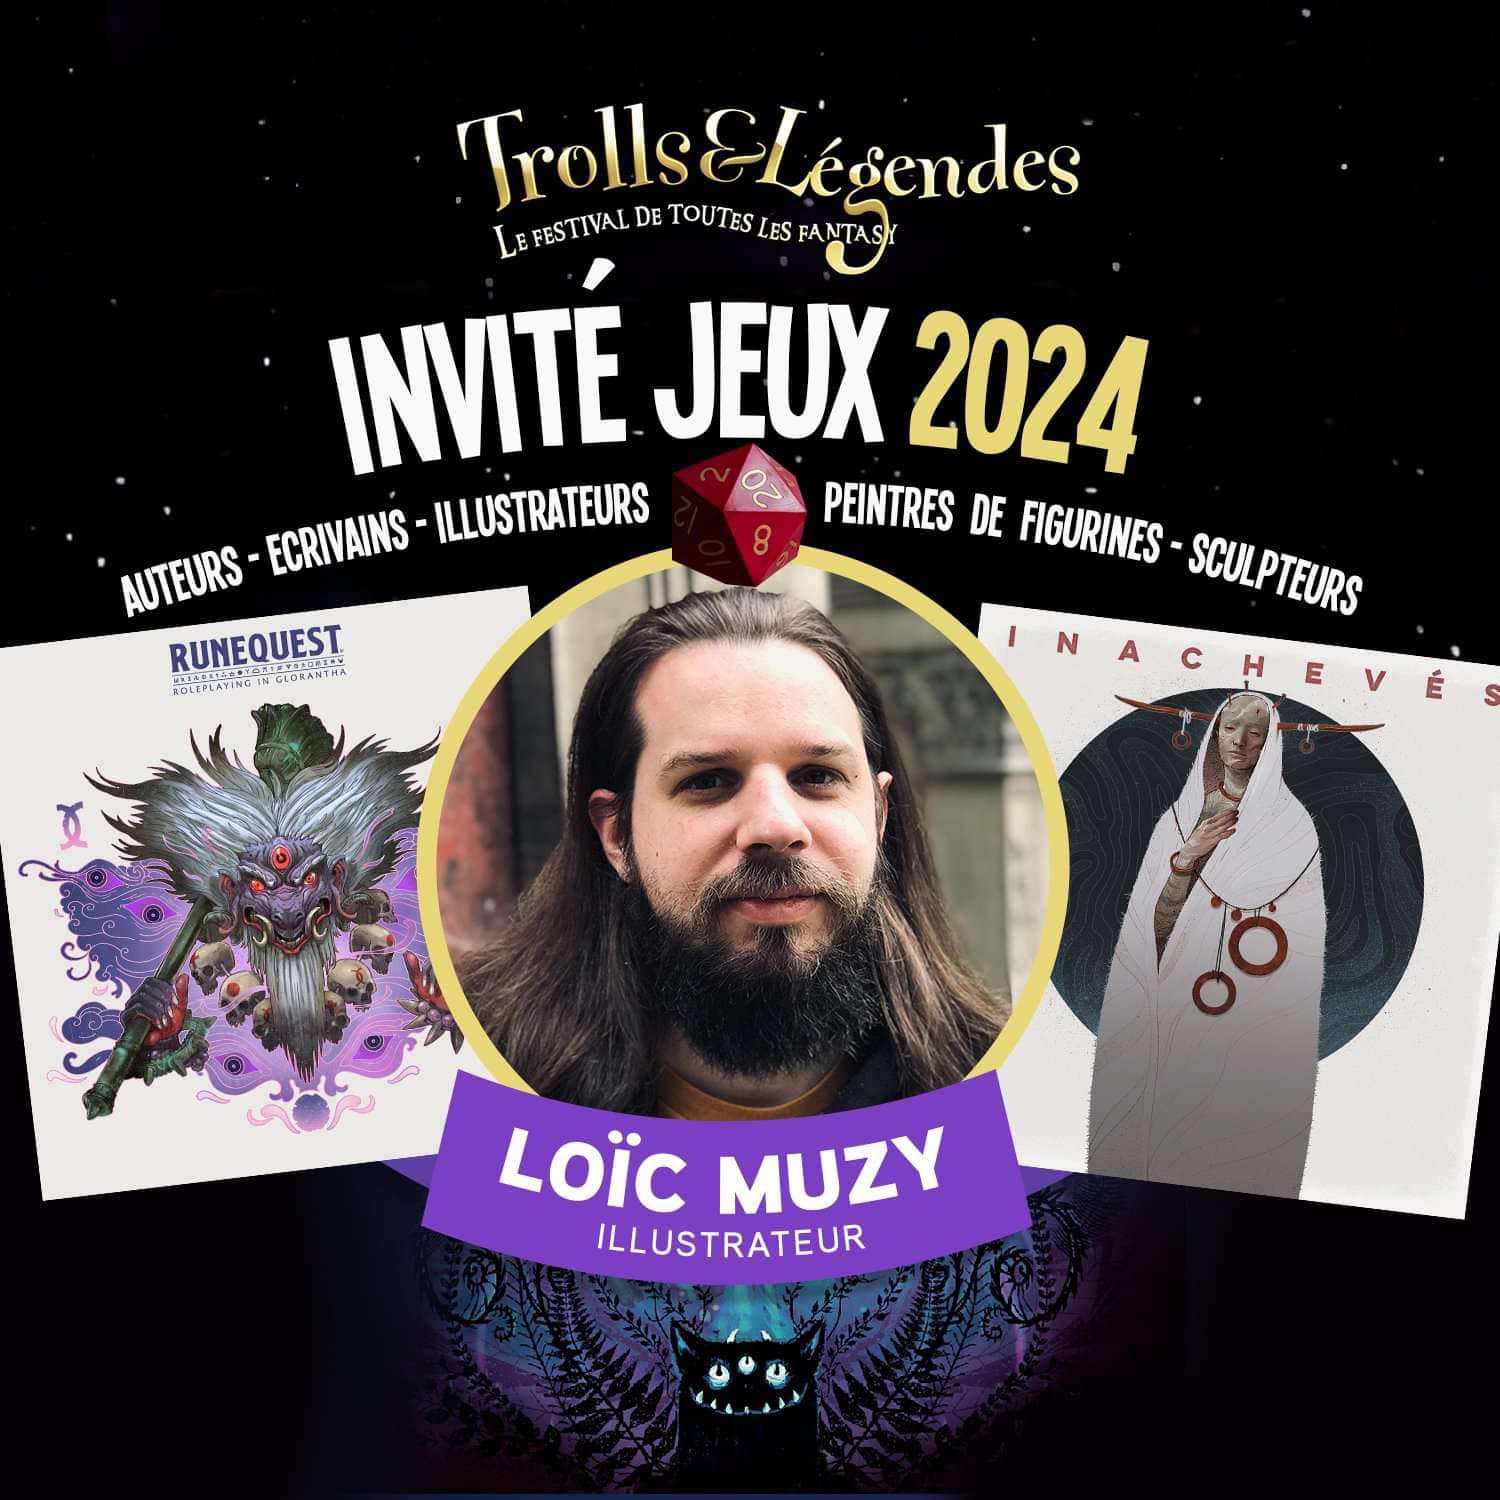 Chaosium staff artist Loïc Muzy is a special guest at Trolls & Légendes 